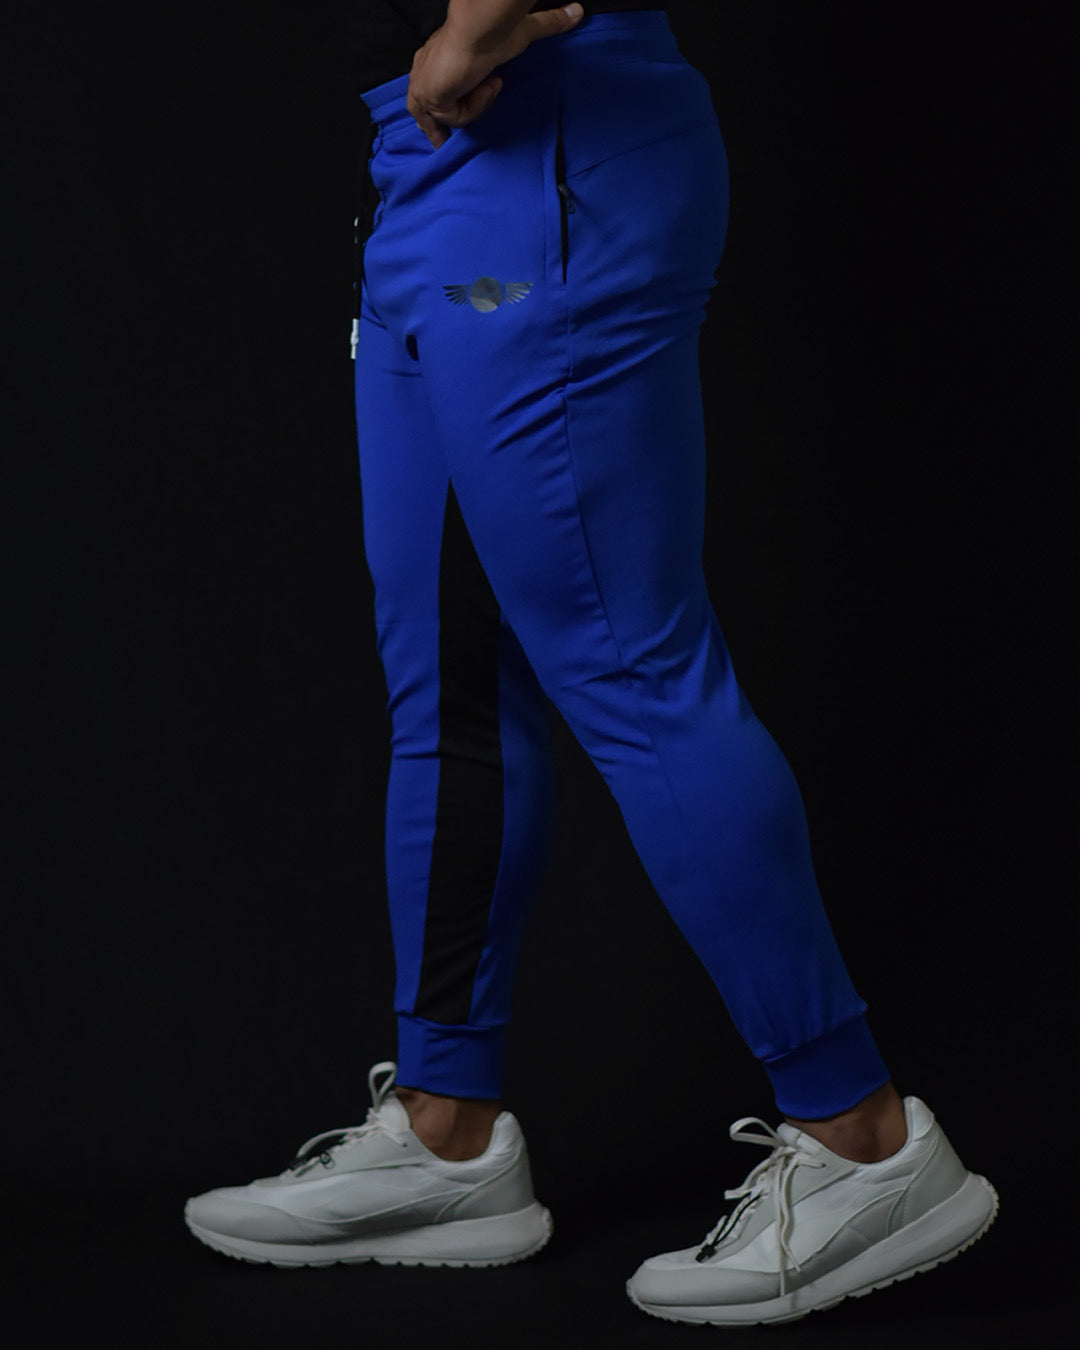 Fashion Ankle-Length Linen Pants Men Slim Fit Dress Pants Casual @ Best  Price Online | Jumia Egypt